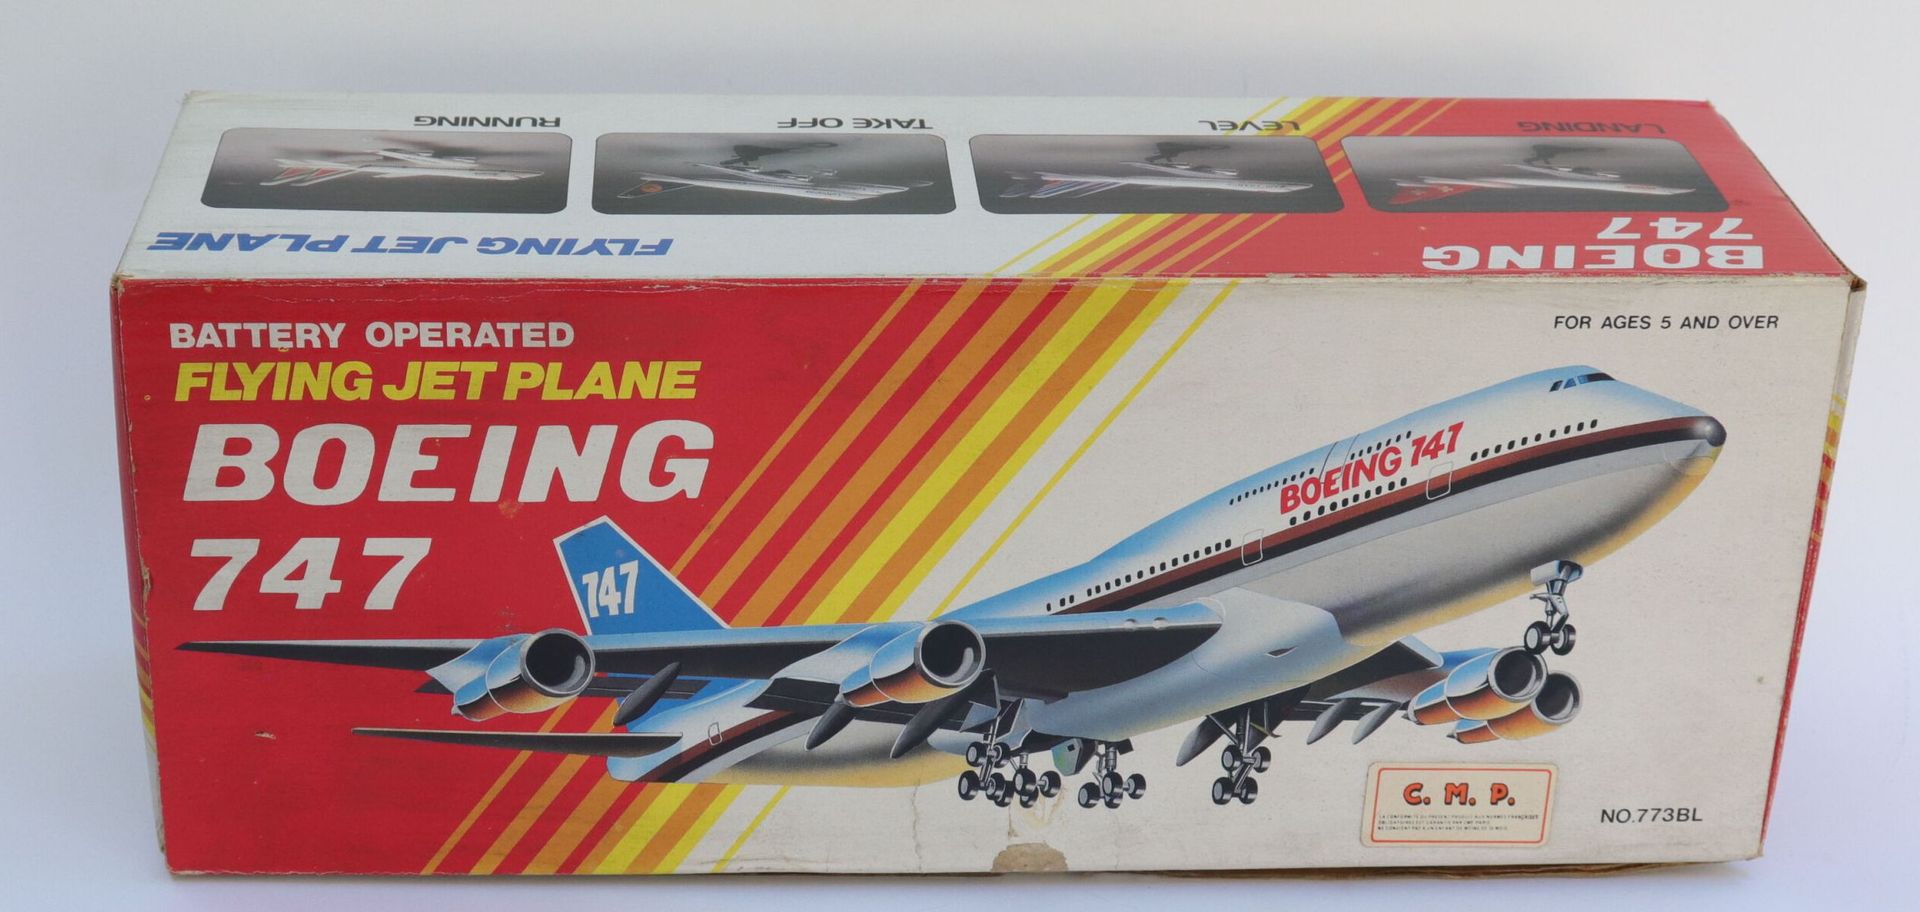 Null 波音B-747法国航空。

树脂和塑料制成的玩具飞机。

电池玩具 香港制造，带原版纸盒。

32 x 13 x 10厘米。



2021年11月9&hellip;